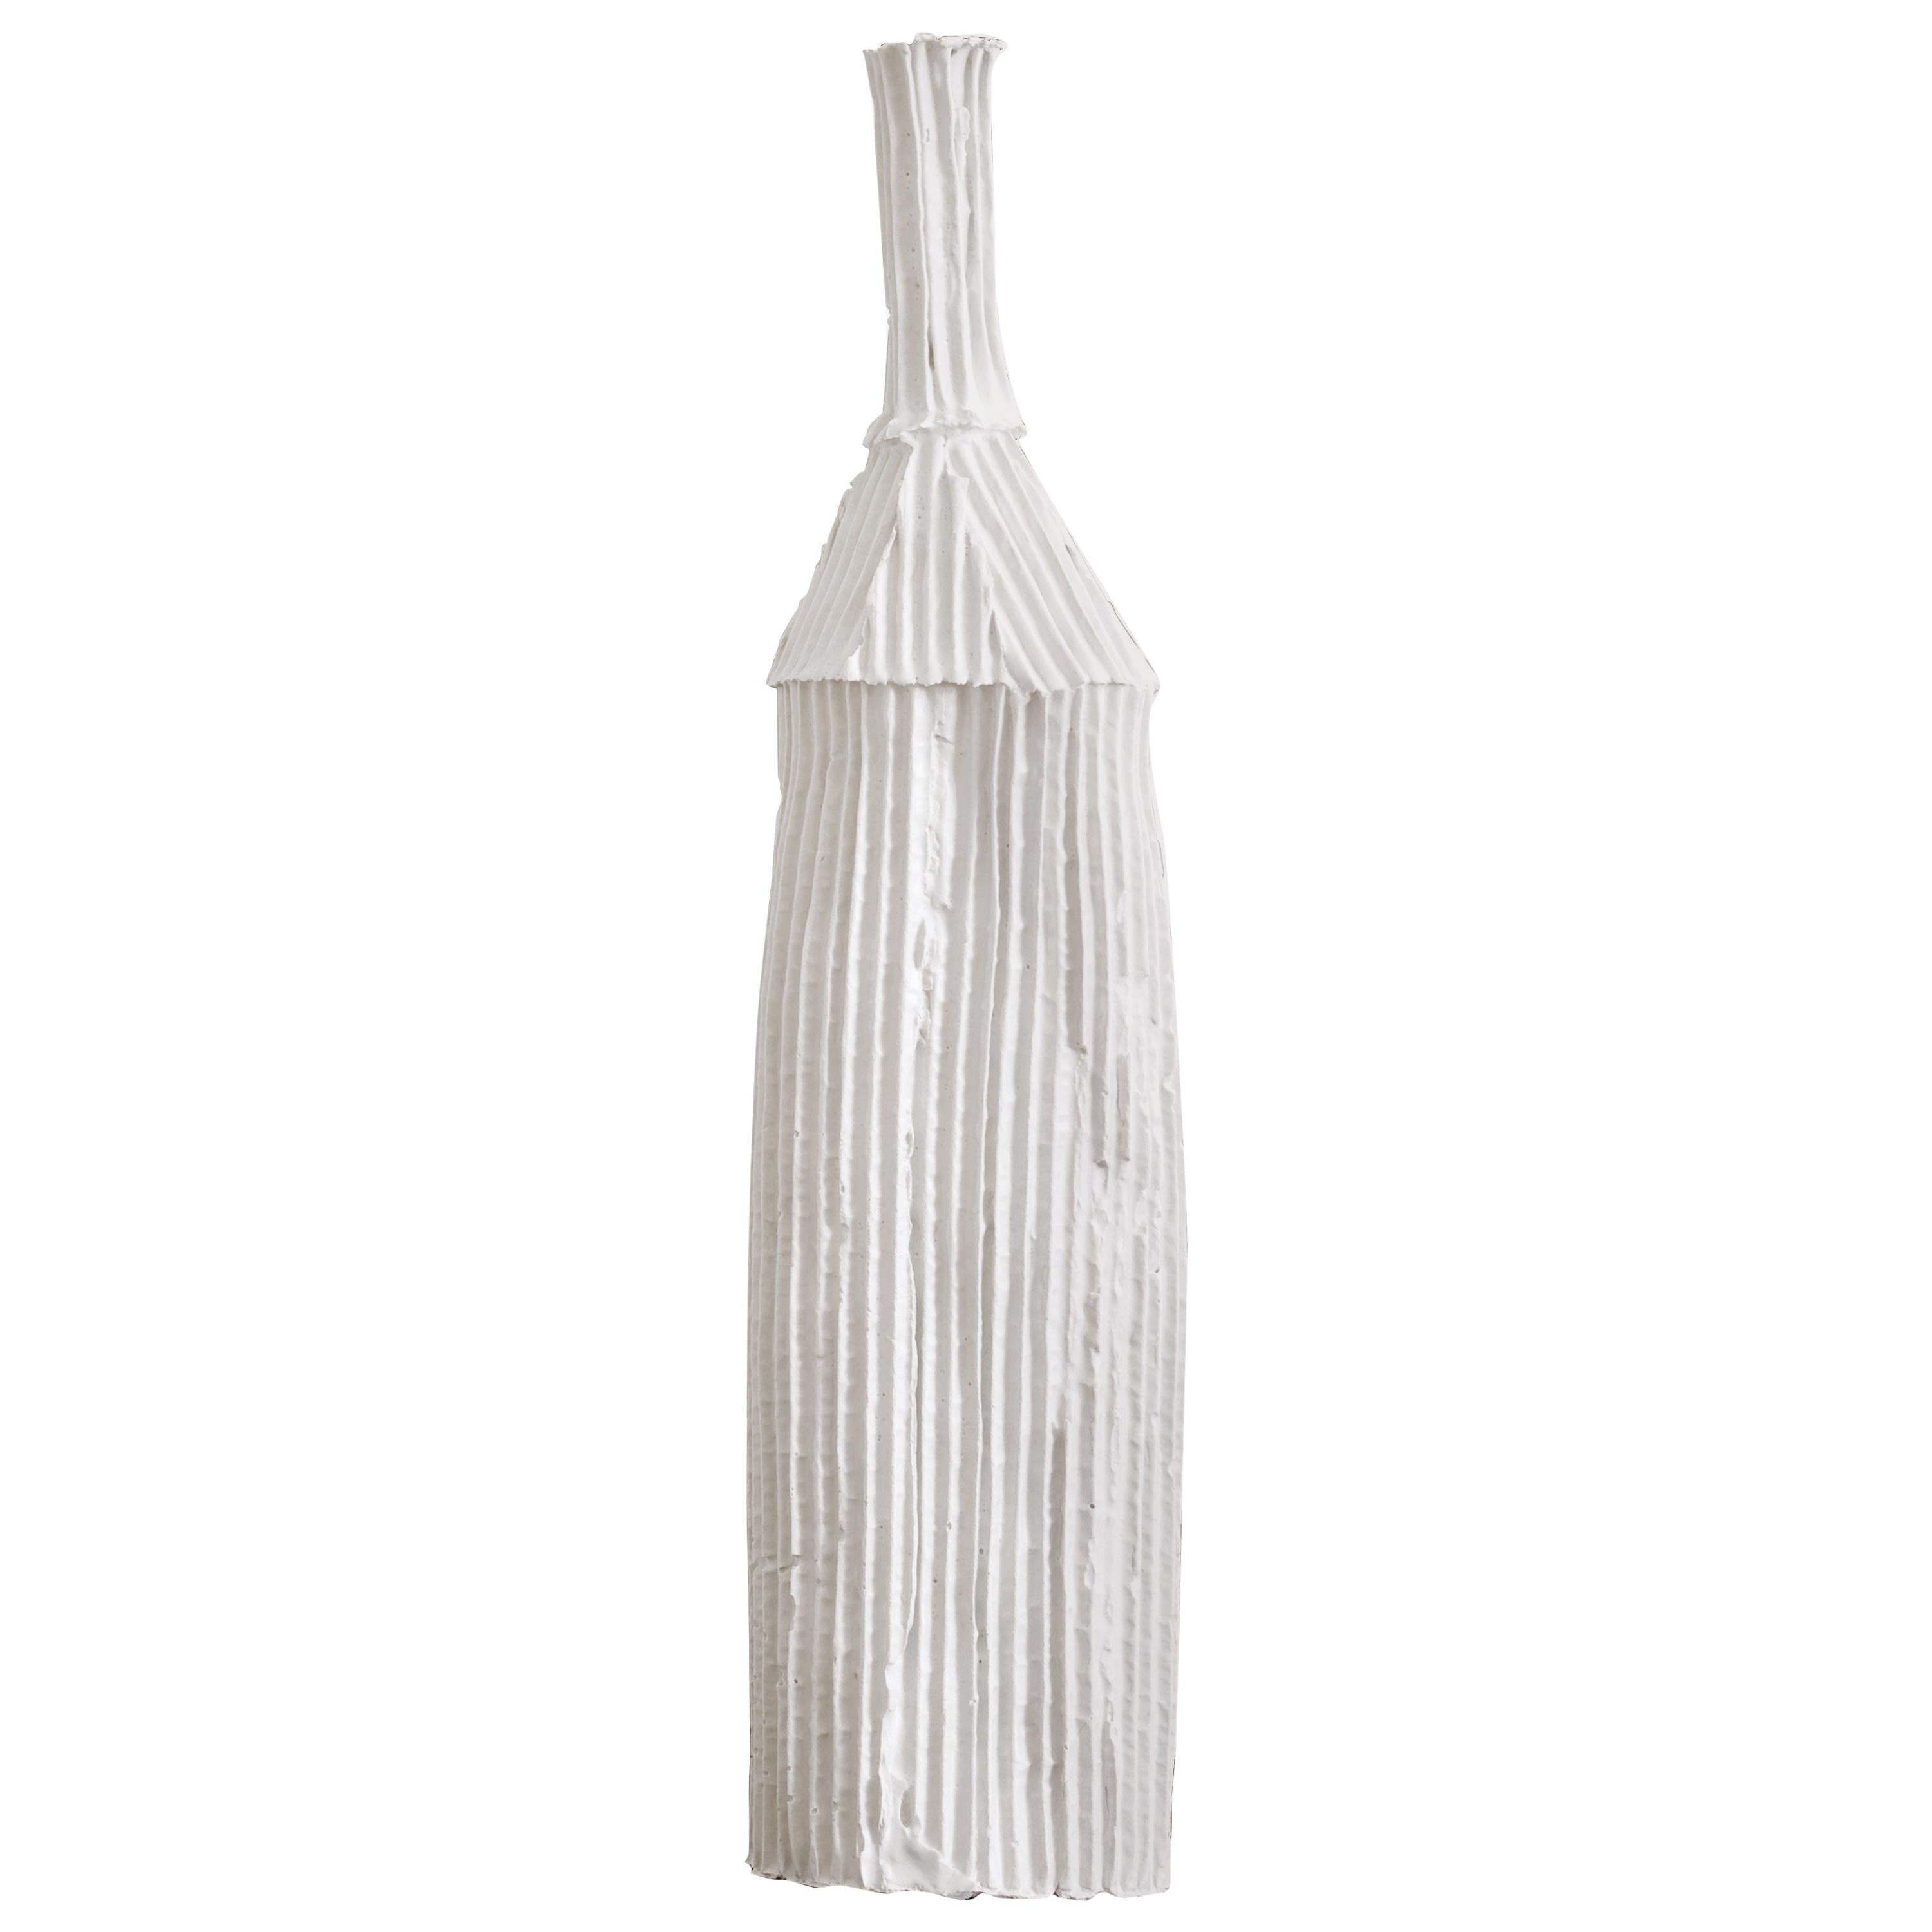 Contemporary Ceramic Cartocci Texture White Decorative Bottle For Sale